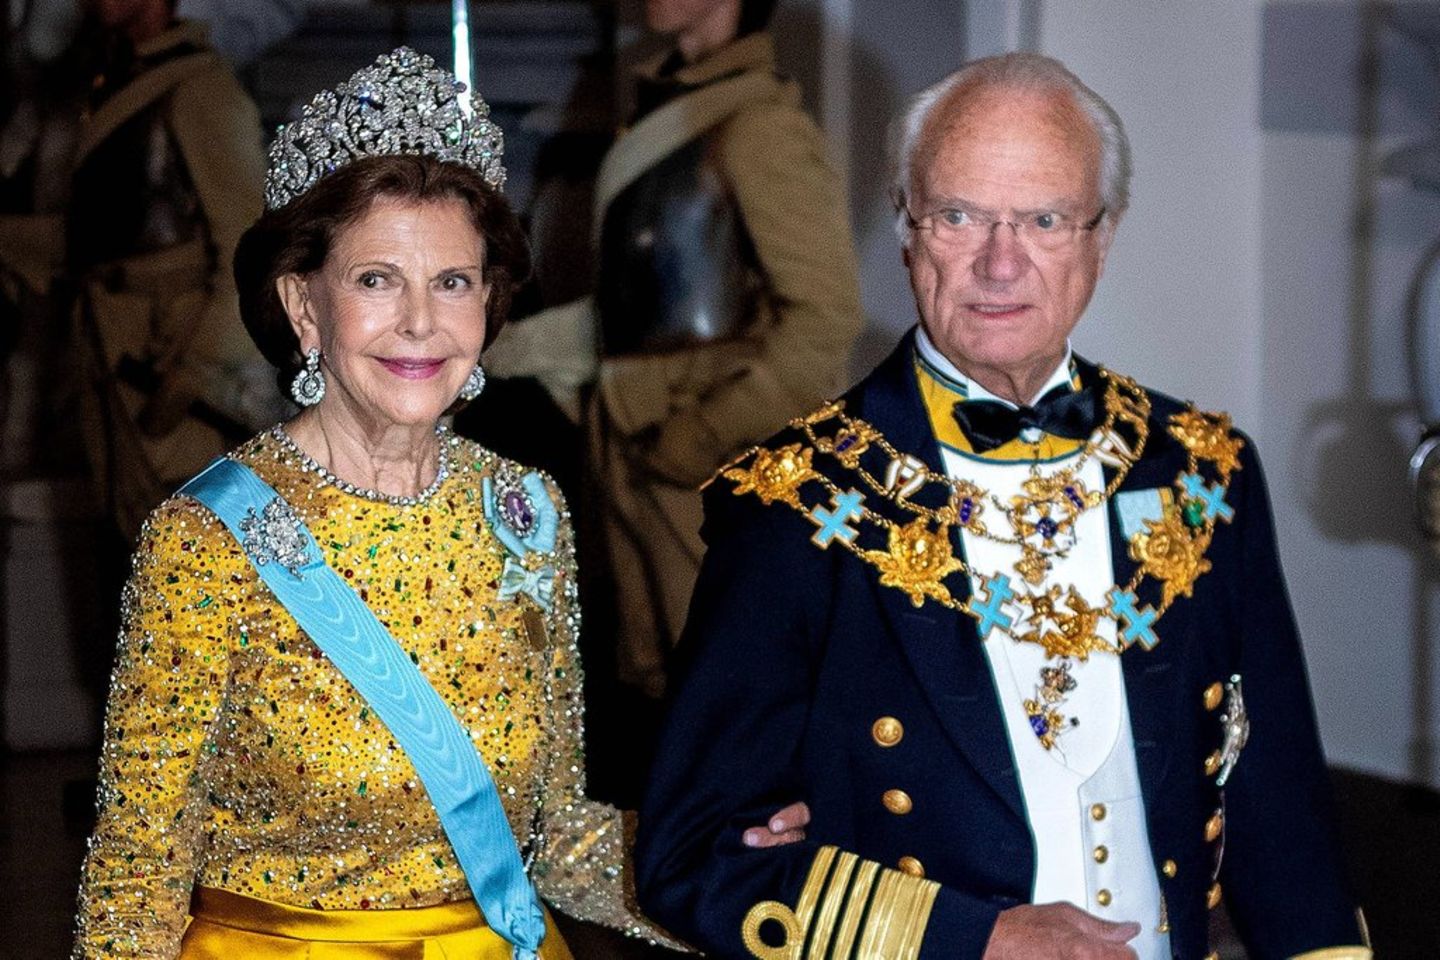 Carl XVI. Gustaf und Silvia von Schweden bei einem Auftritt im Rahmen des Thronjubiläums.